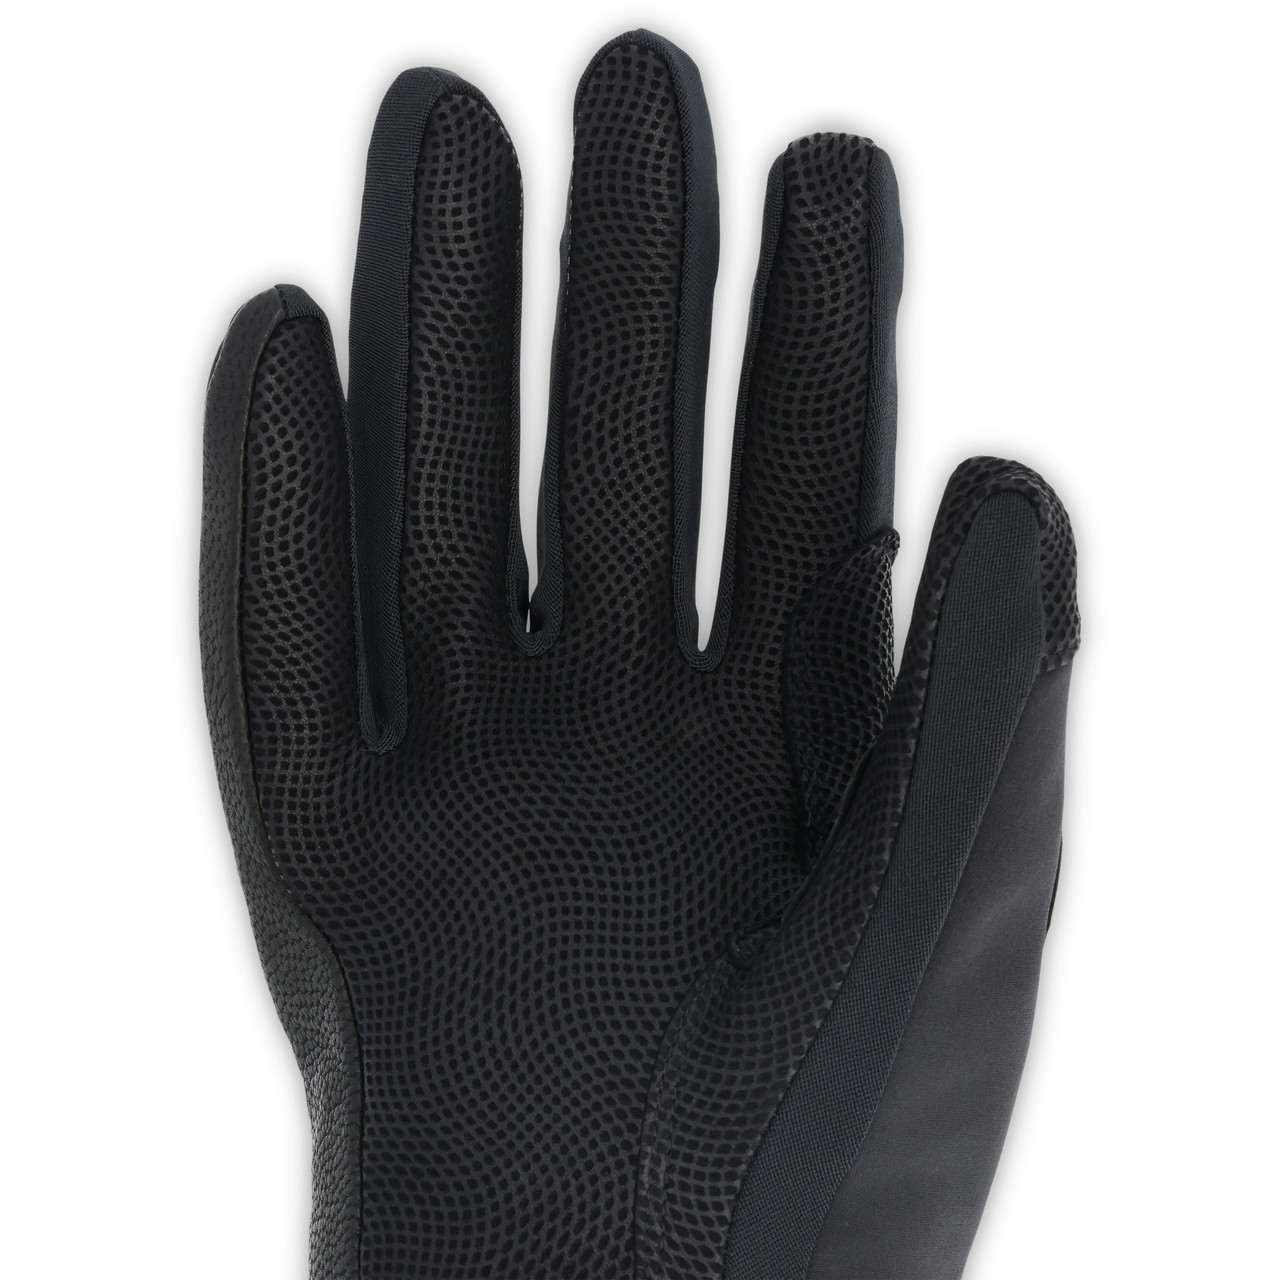 Mixalot Gloves Black